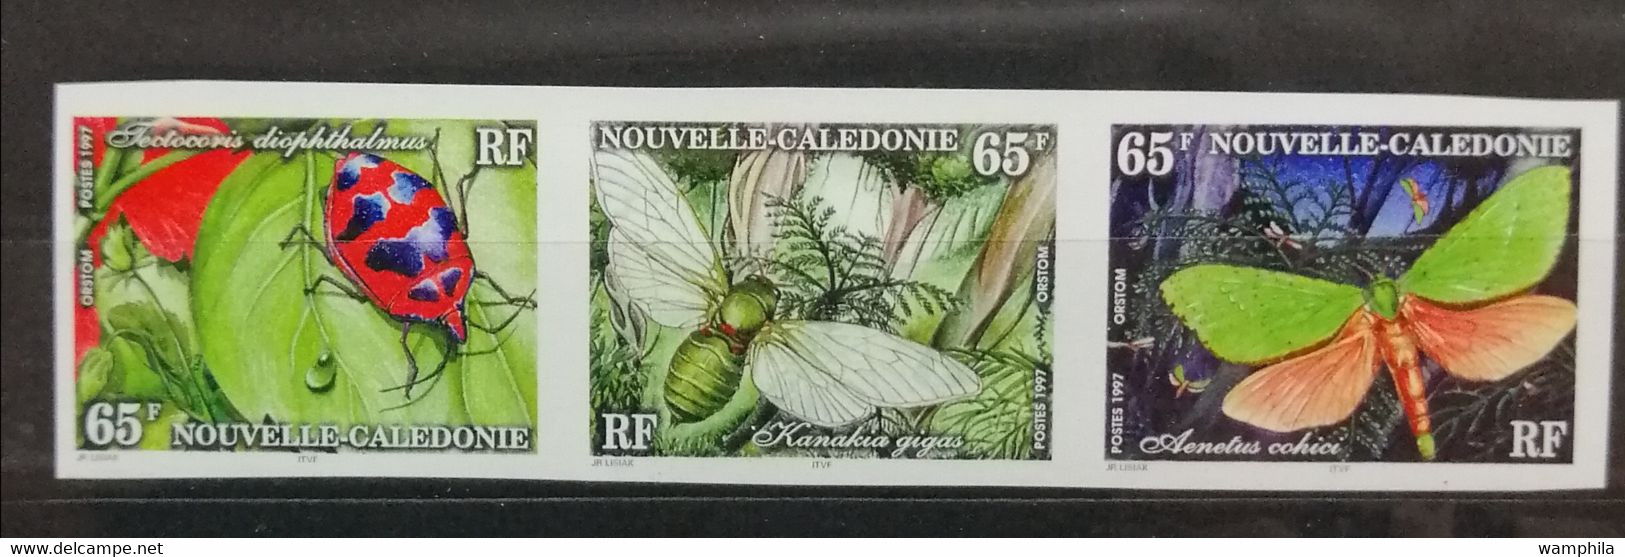 Nouvelle-Calédonie NON DENTELE N°746A**. Papillons. Cote 60€ - Sin Dentar, Pruebas De Impresión Y Variedades